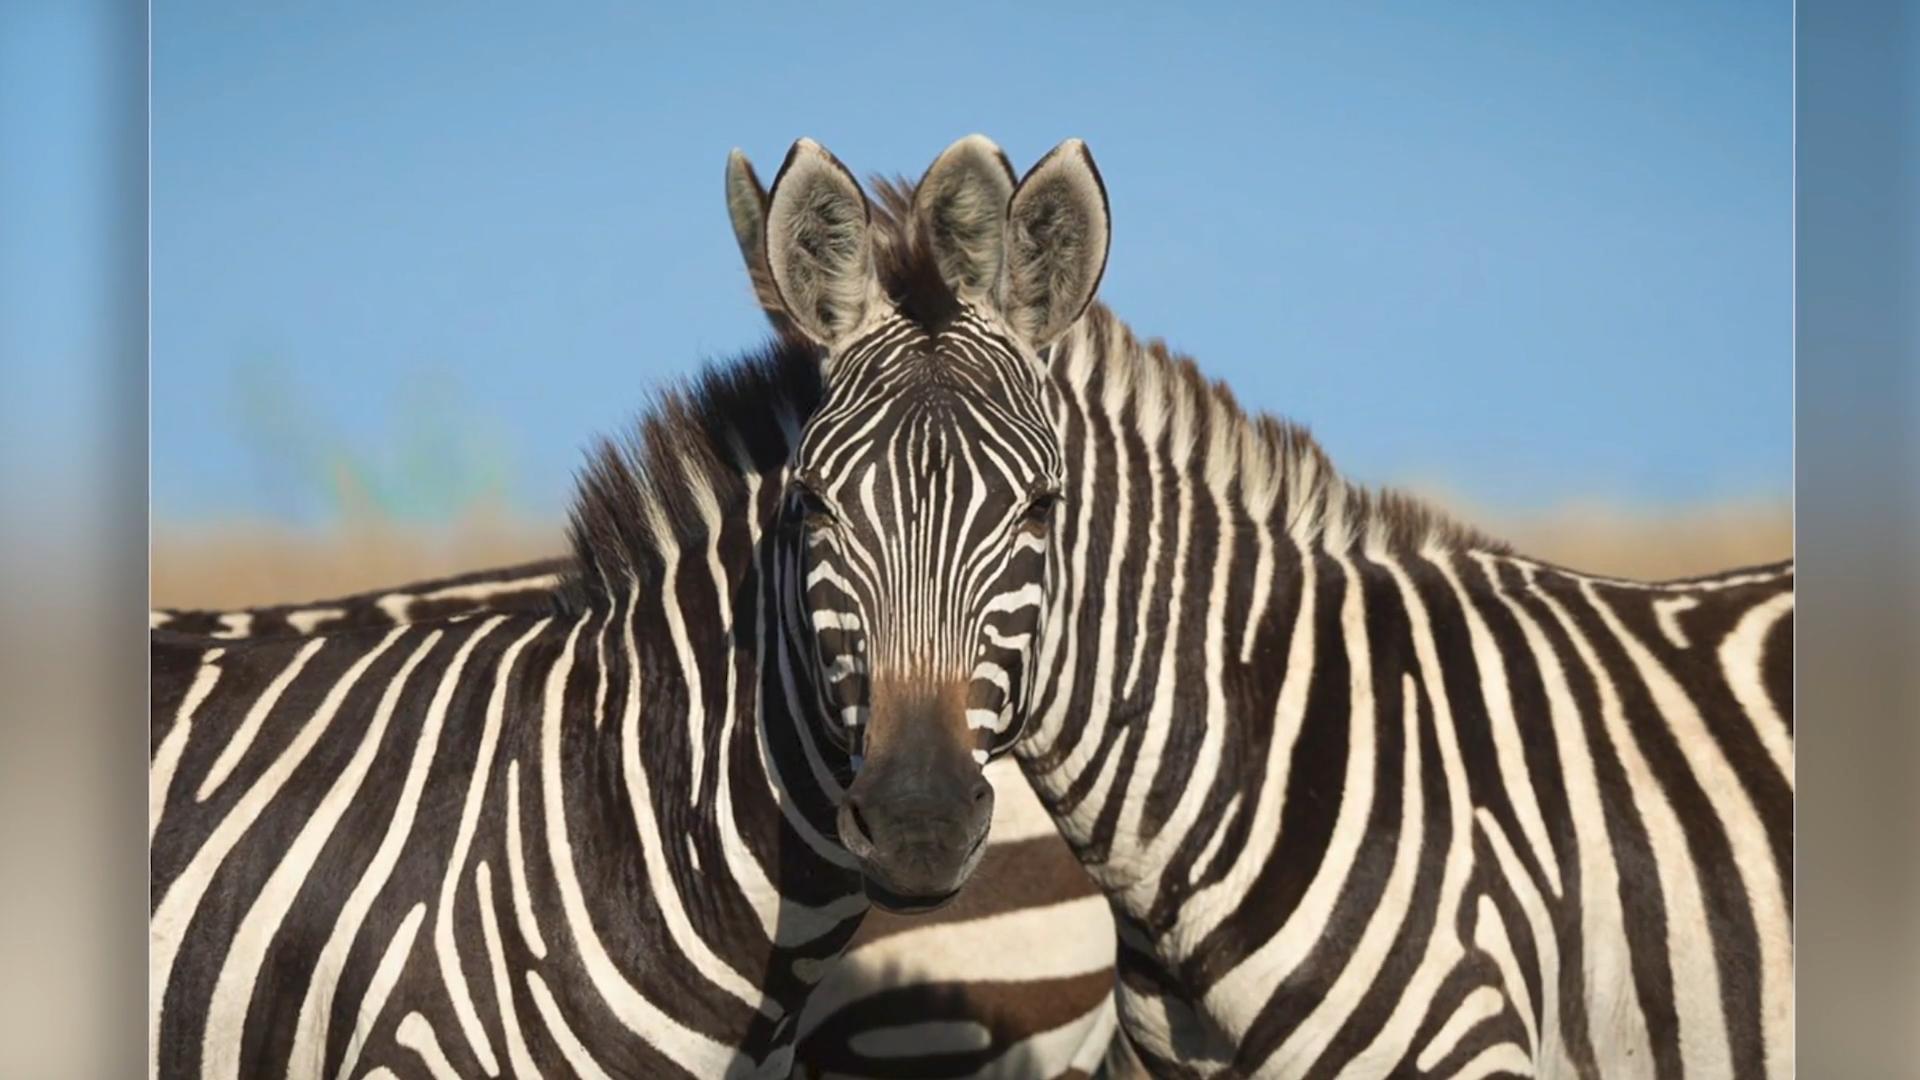 Quale zebra è in primo piano - sinistra o destra?  Illusioni ottiche